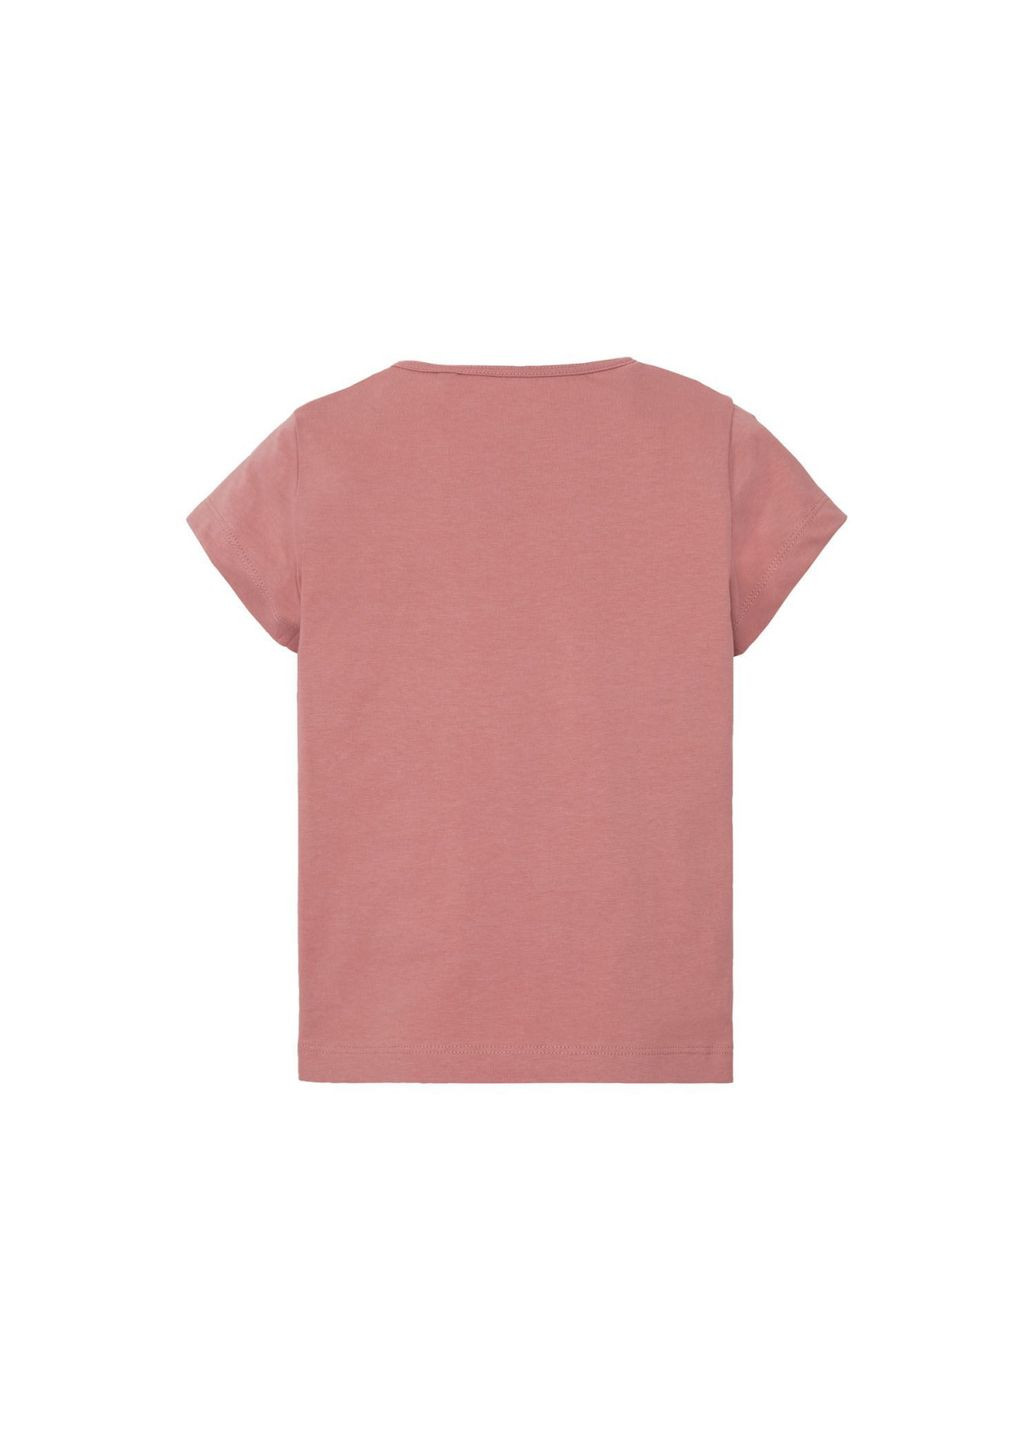 Розовая демисезонная футболка хлопковая с оборками для девочки 327673 Lupilu